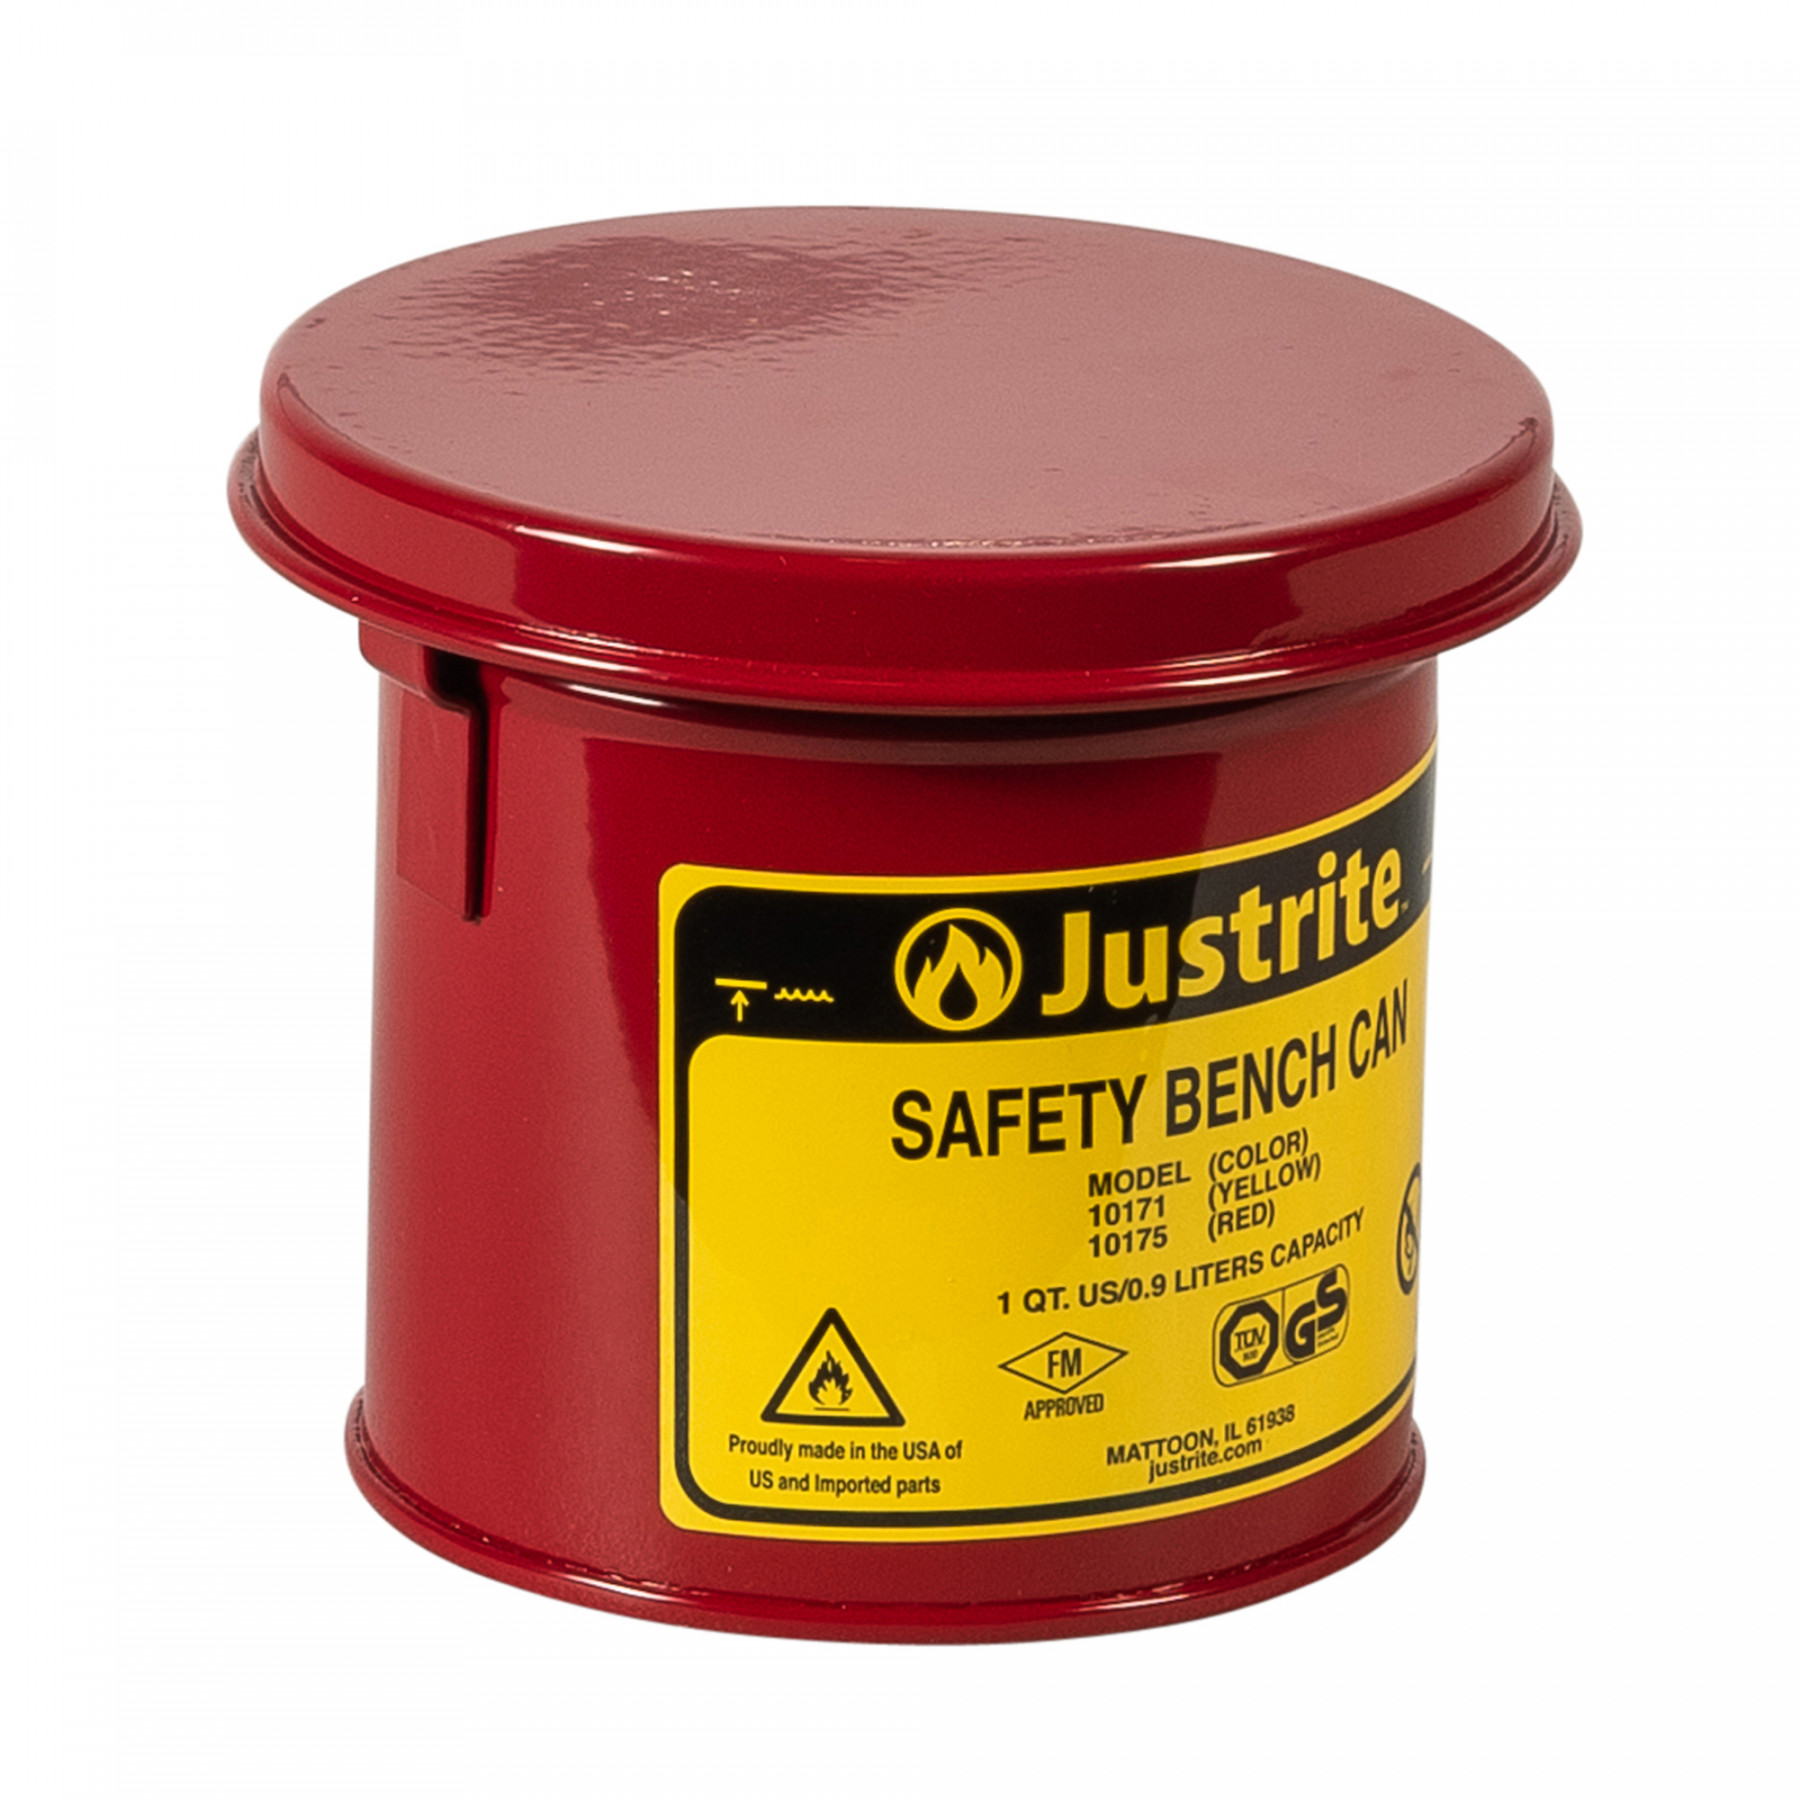 Sicherheits-Tauchbehälter für Kleinteile, 1 Liter in rot